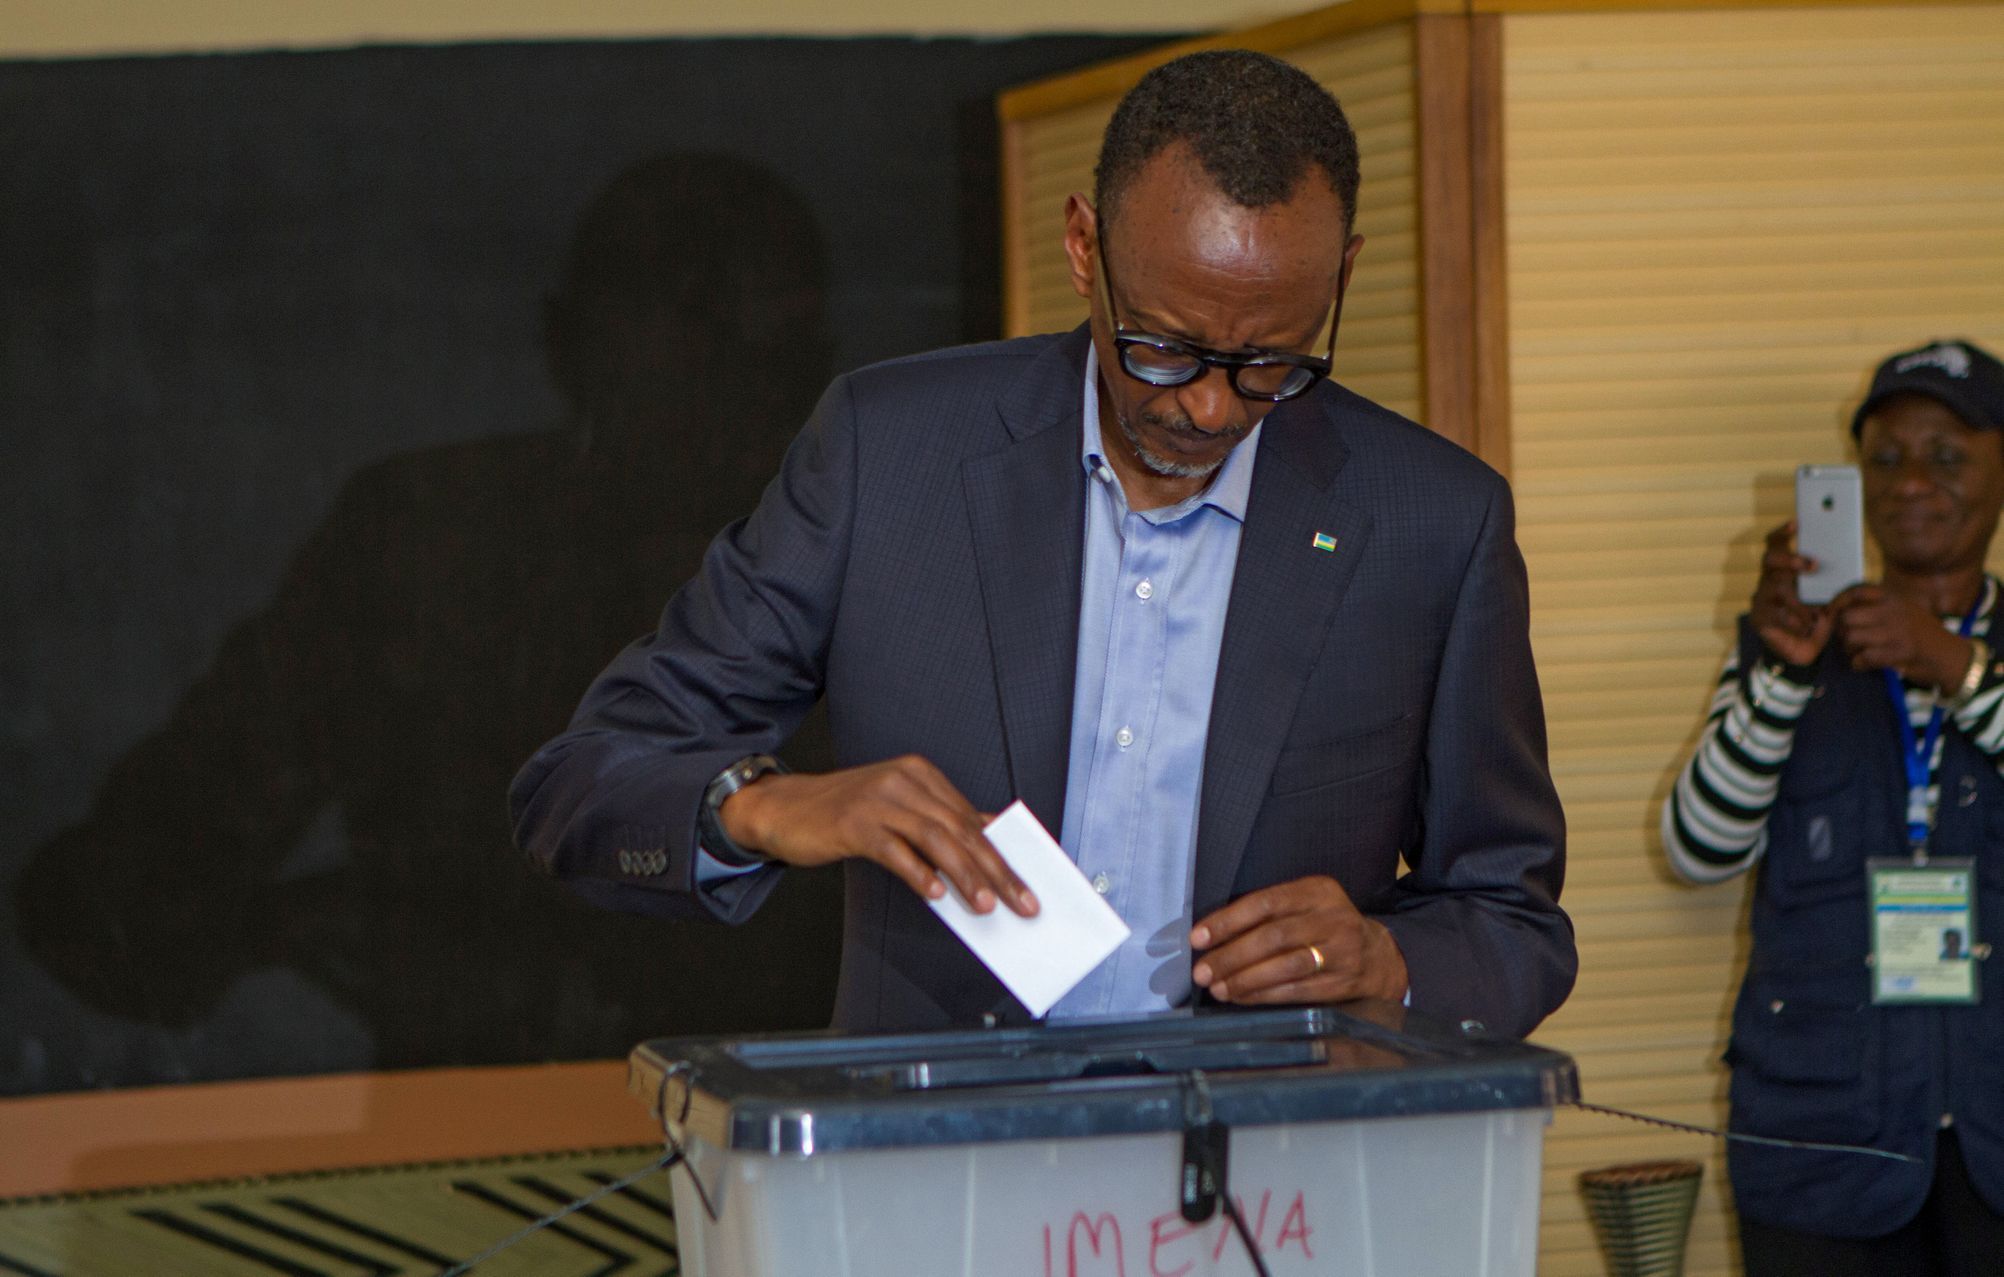 Rwandský prezident Kagame volí v prezidentských volbách